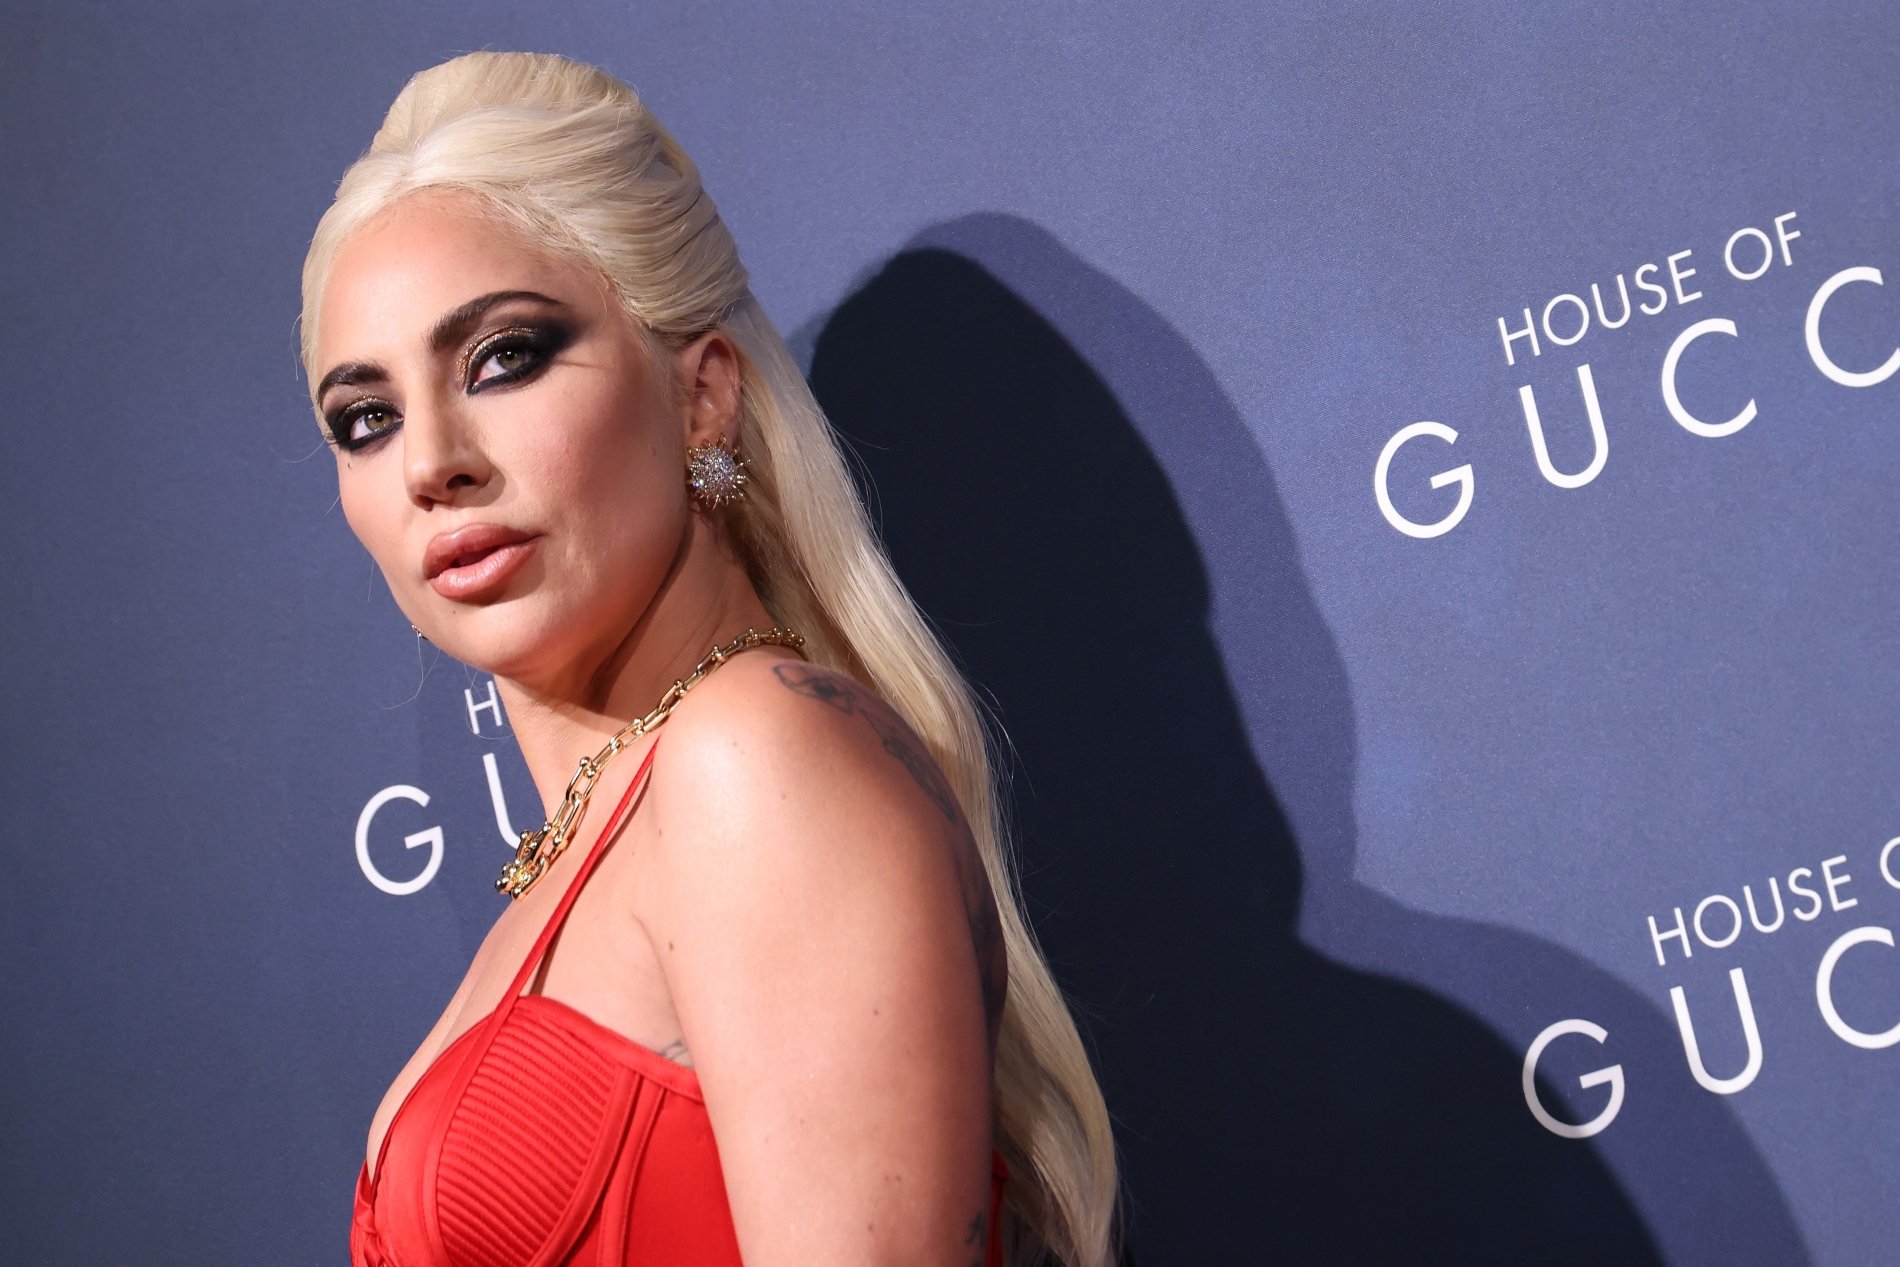 L’allenatore dell’accento Salma Hayek ha criticato l’accento di Lady Gaga, dicendo che sembrava russo